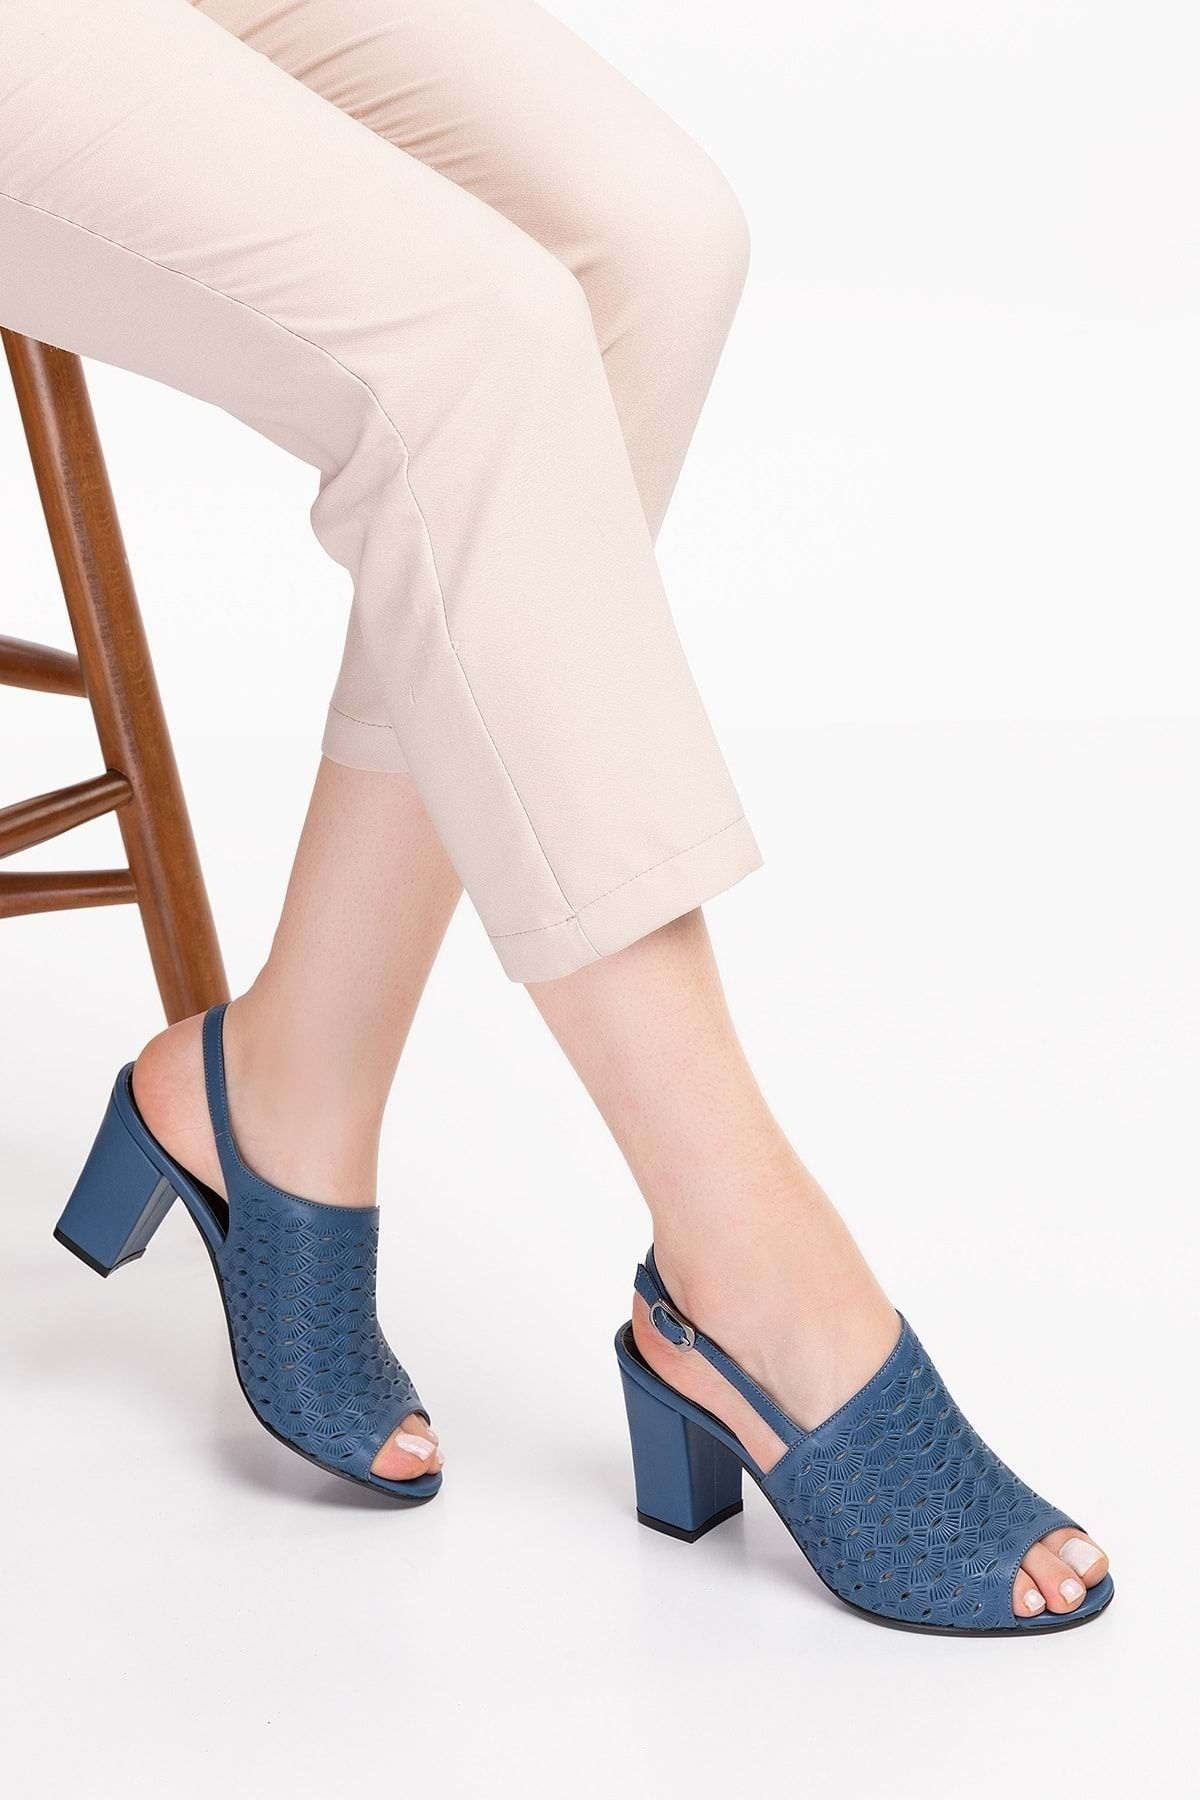 Gondol Kadın Hakiki Deri Lazer Kesim Klasik Topuklu Ayakkabı Şhn.835 - Mavi - 43